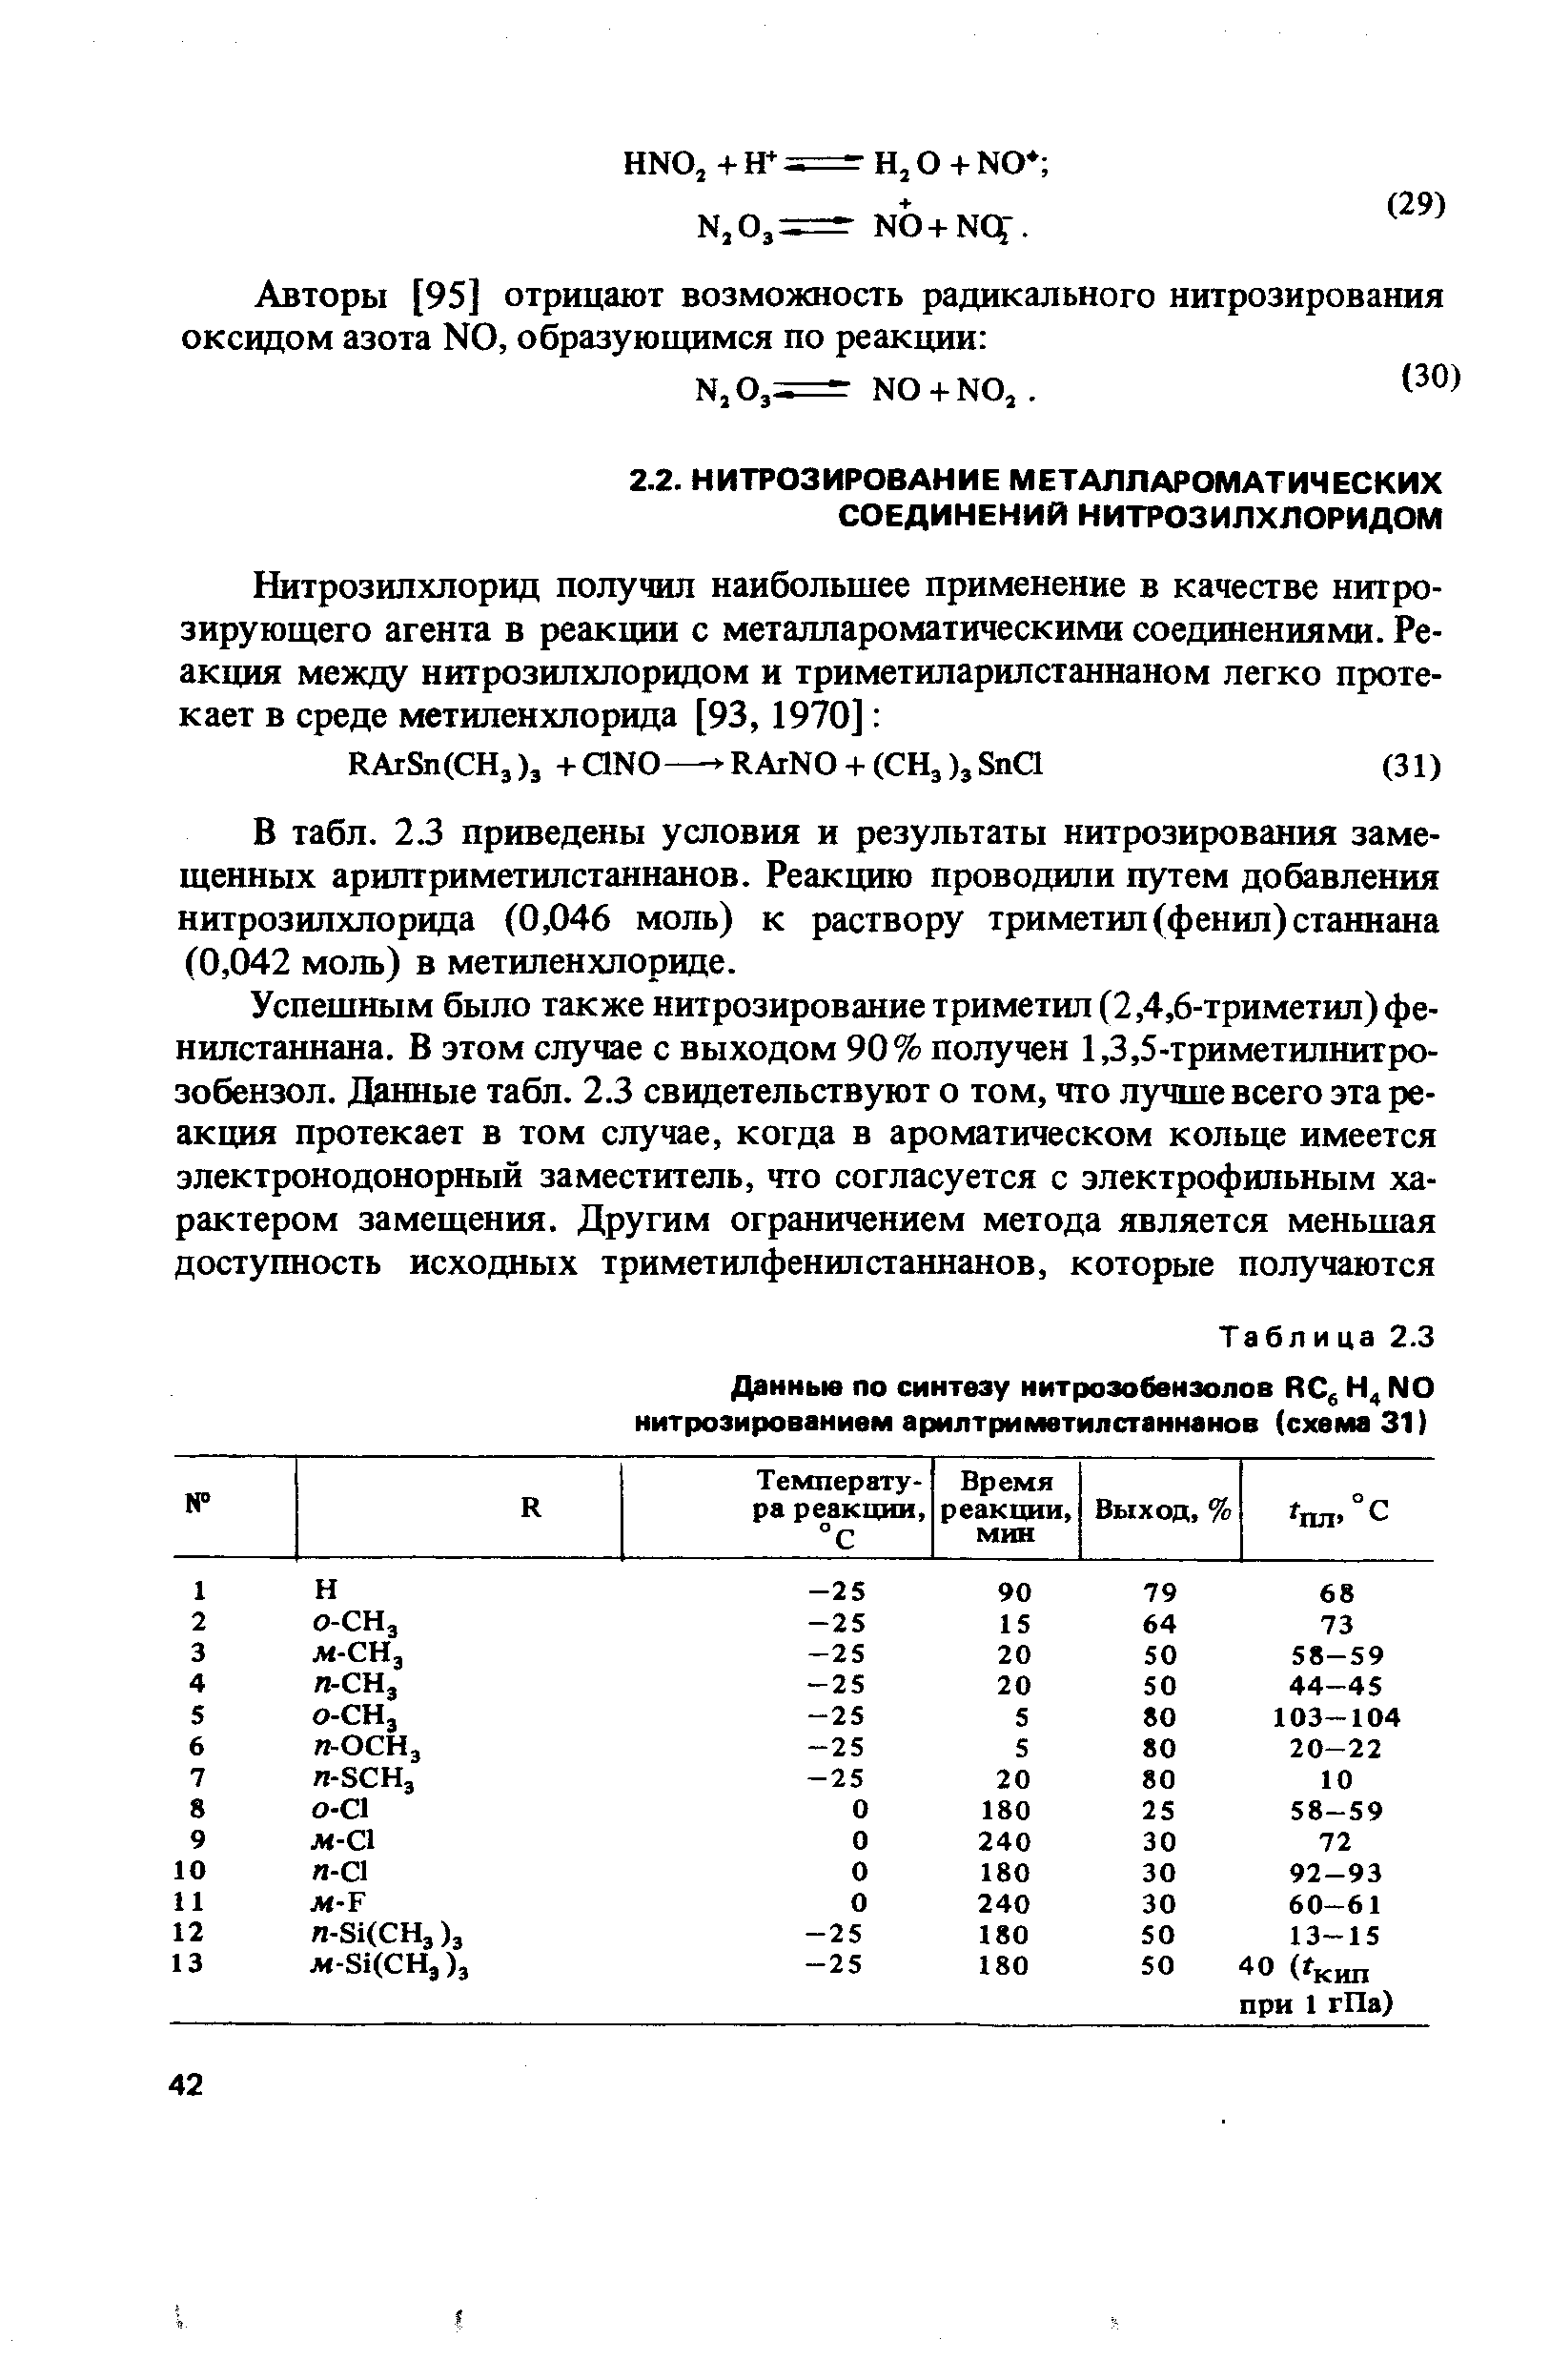 В табл. 2.3 приведены условия и результаты нитрозирования замещенных арилтриметилстаннанов. Реакцию проводили путем добавления нитрозилхлорида (0,046 моль) к раствору триметил (фенил) станнана (0,042 моль) в метиленхлориде.